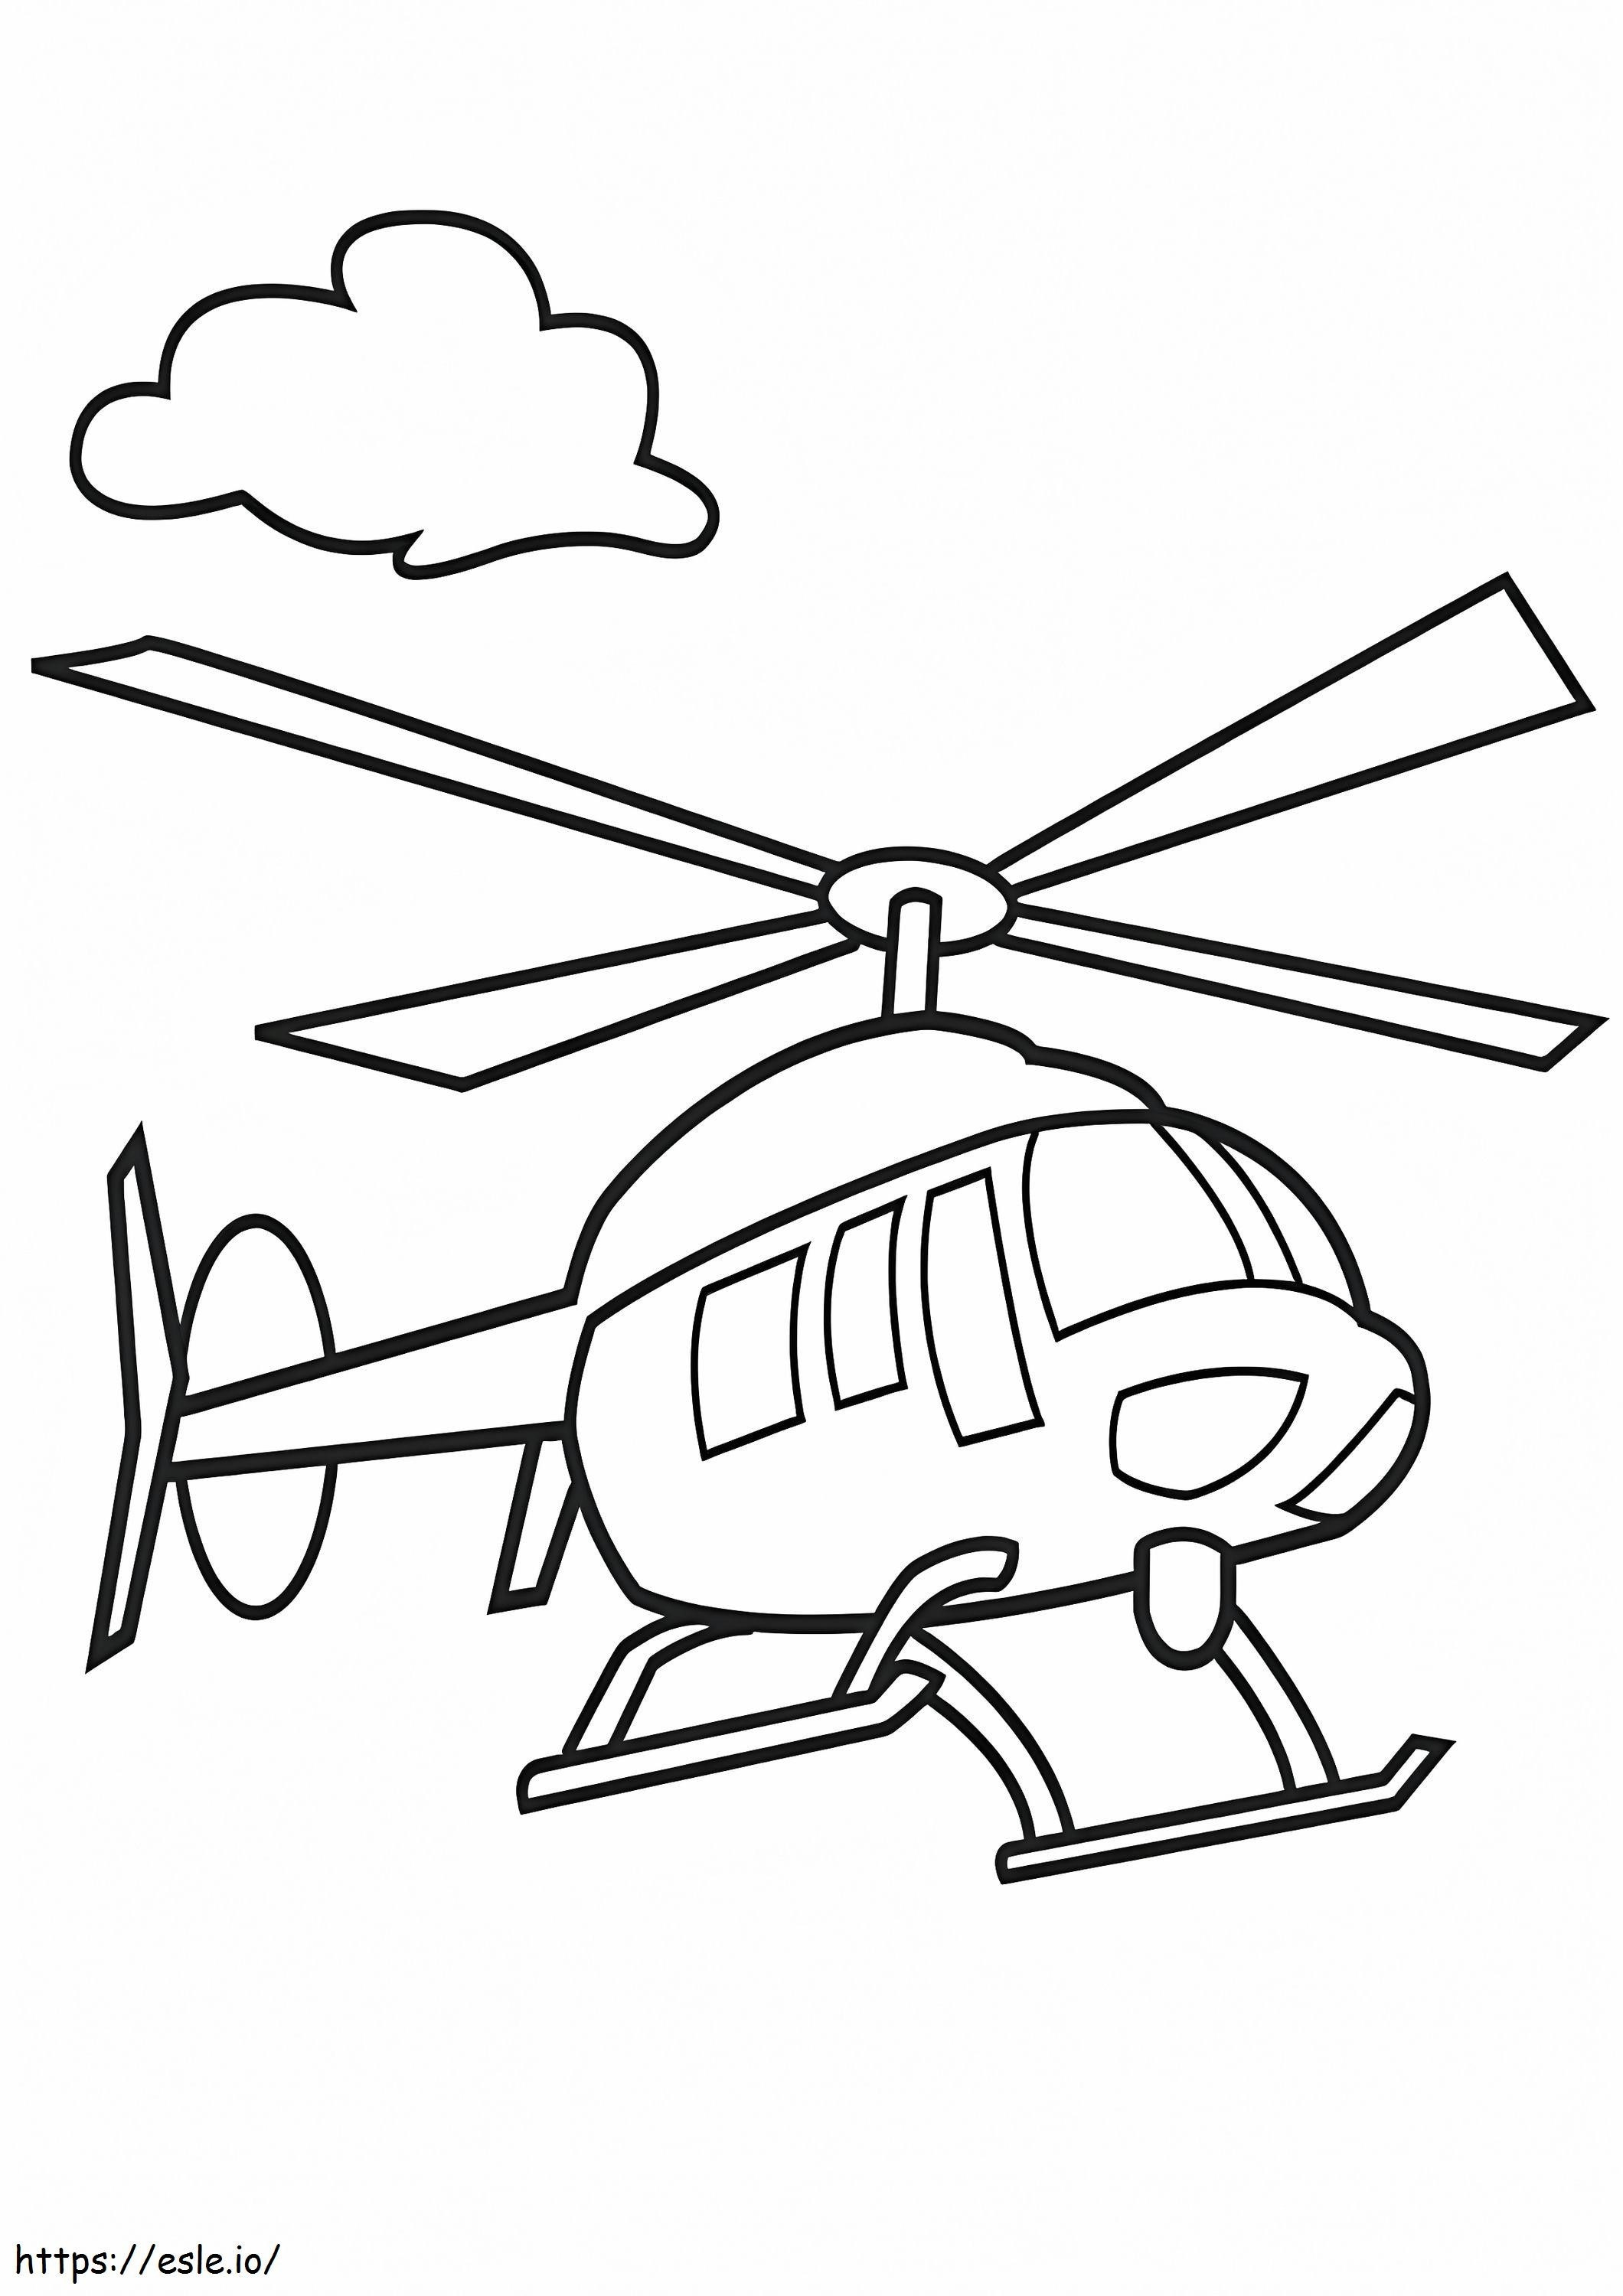 Hubschrauber 2 ausmalbilder